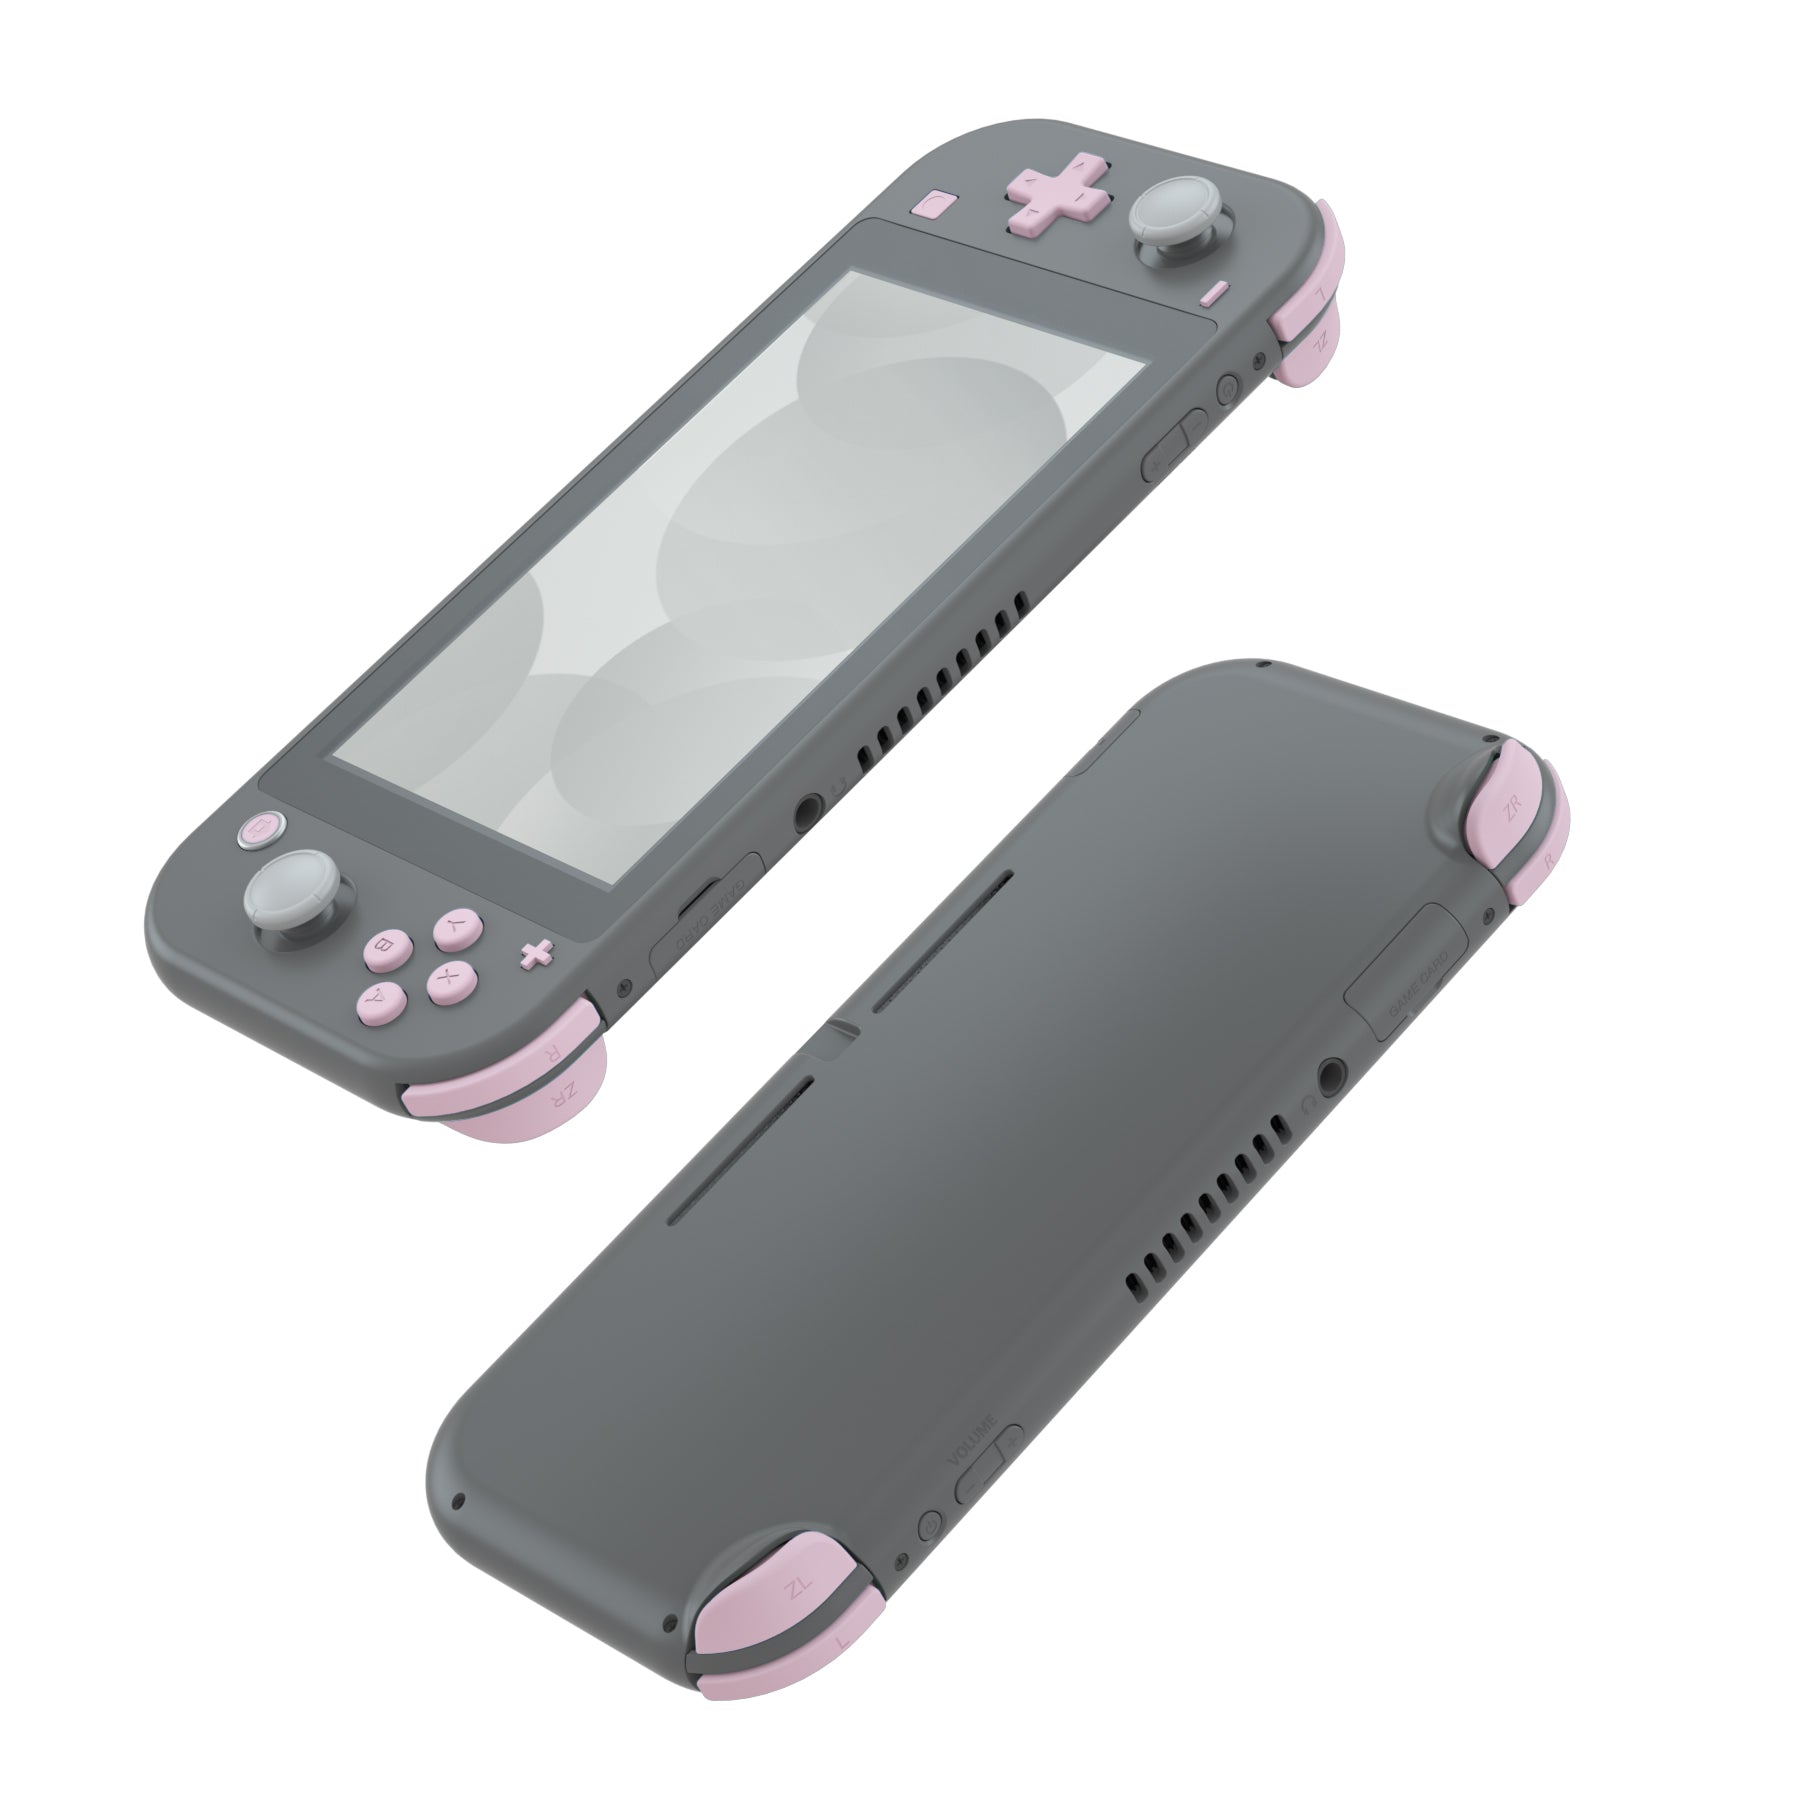 チェリー ブロッサム ピンク 交換用 ABXY ホームキャプチャ プラス マイナス キー Nintendo Switch Lite 用 Dpad LR  ZL ZR トリガー、Nintendo Switch Lite 用ツール付きフルセット ボタン修理キット - HL506